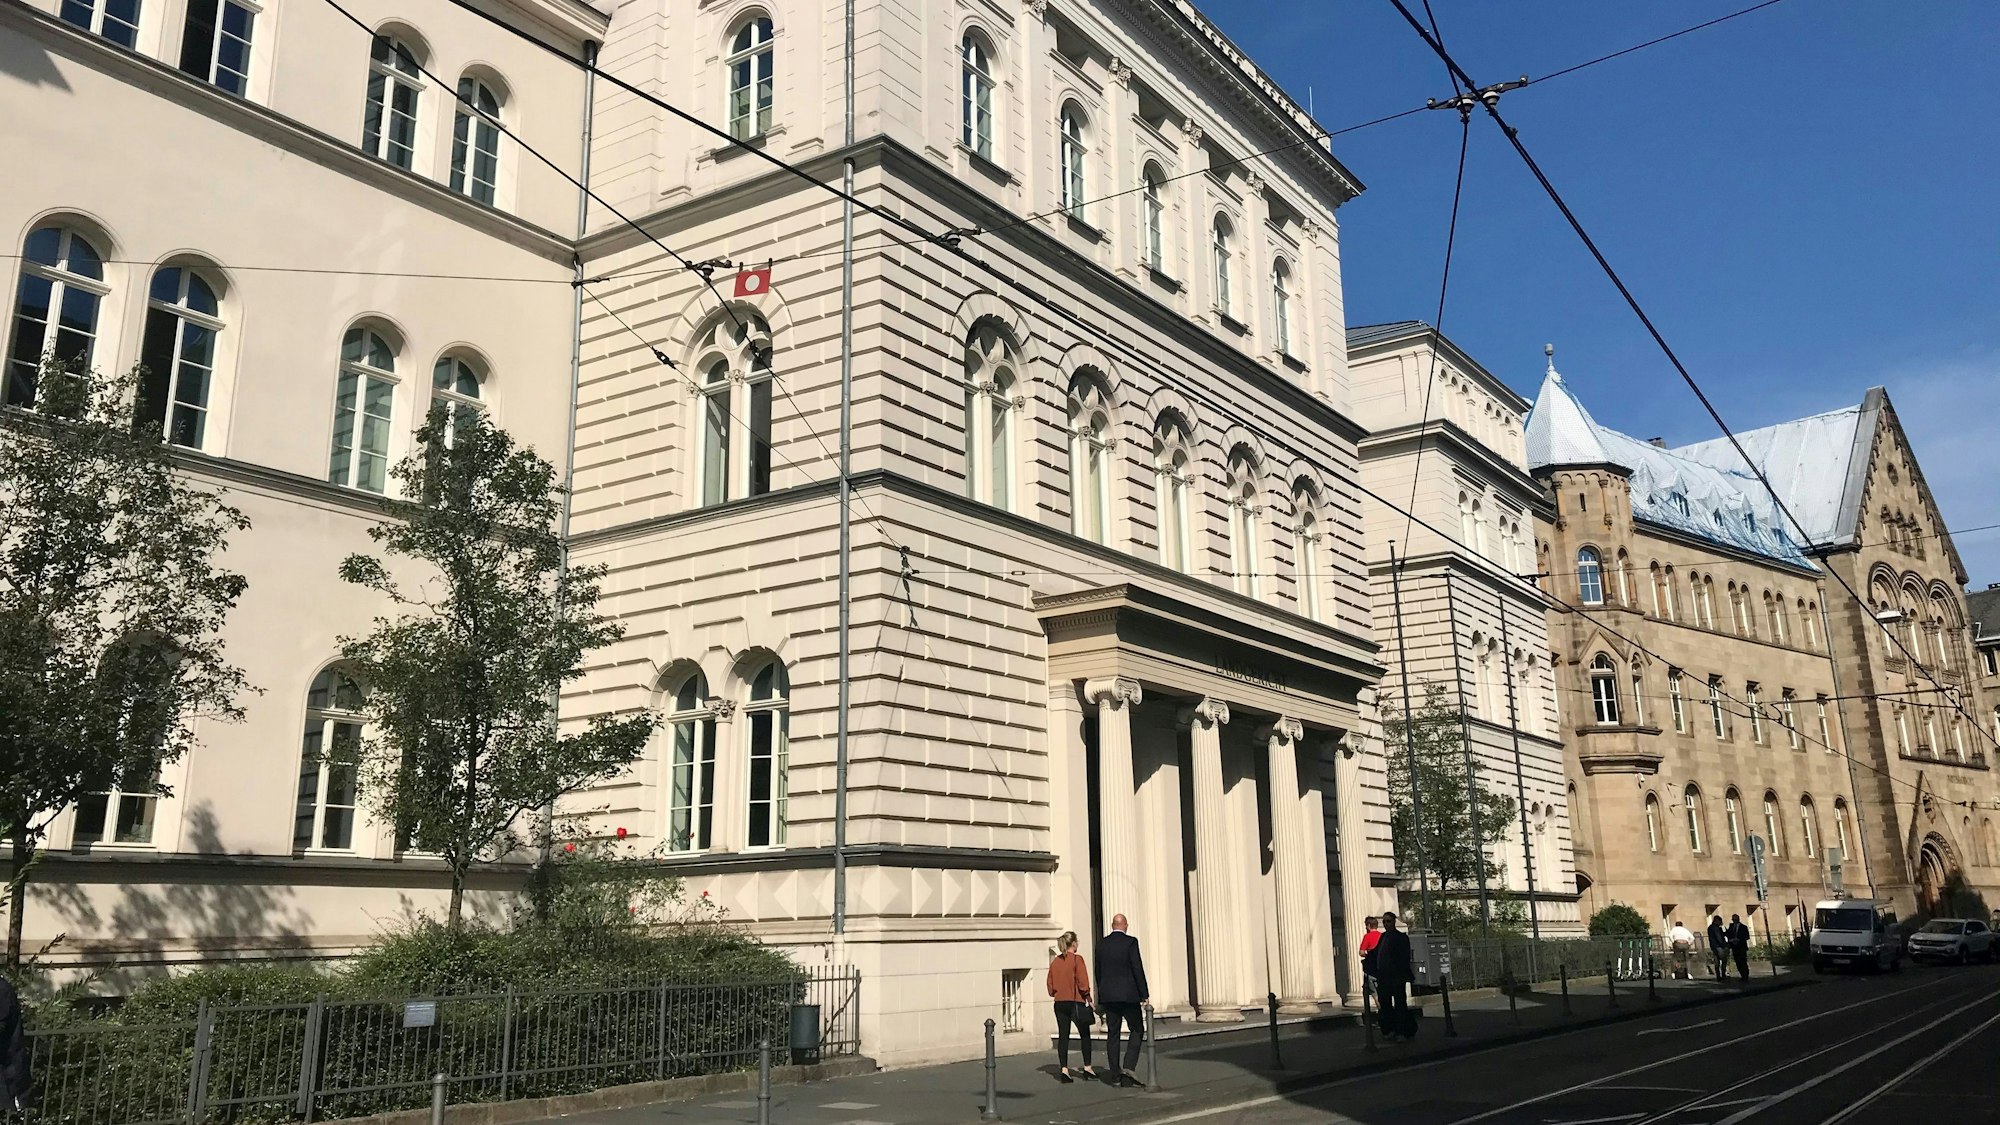 Das Gebäude des Landgerichts Bonn, Menschen gehen auf dem Bürgersteig davor.